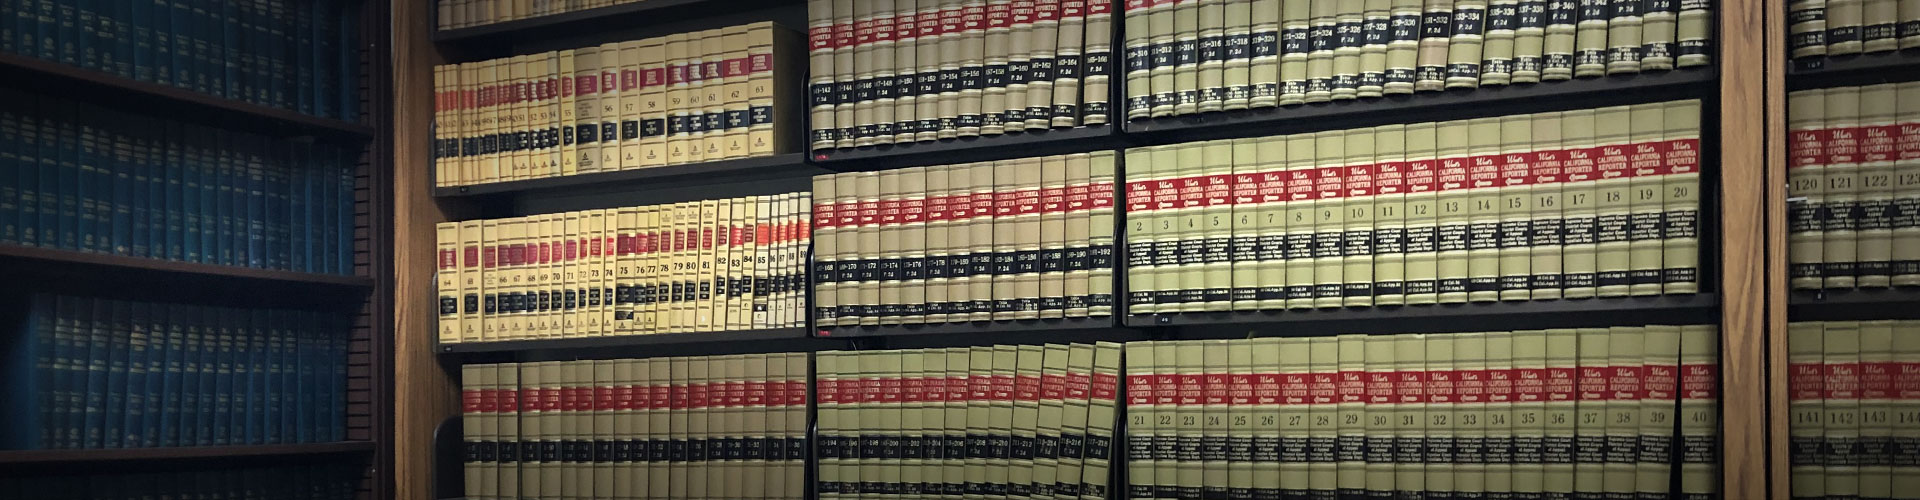 law books in bookshelves